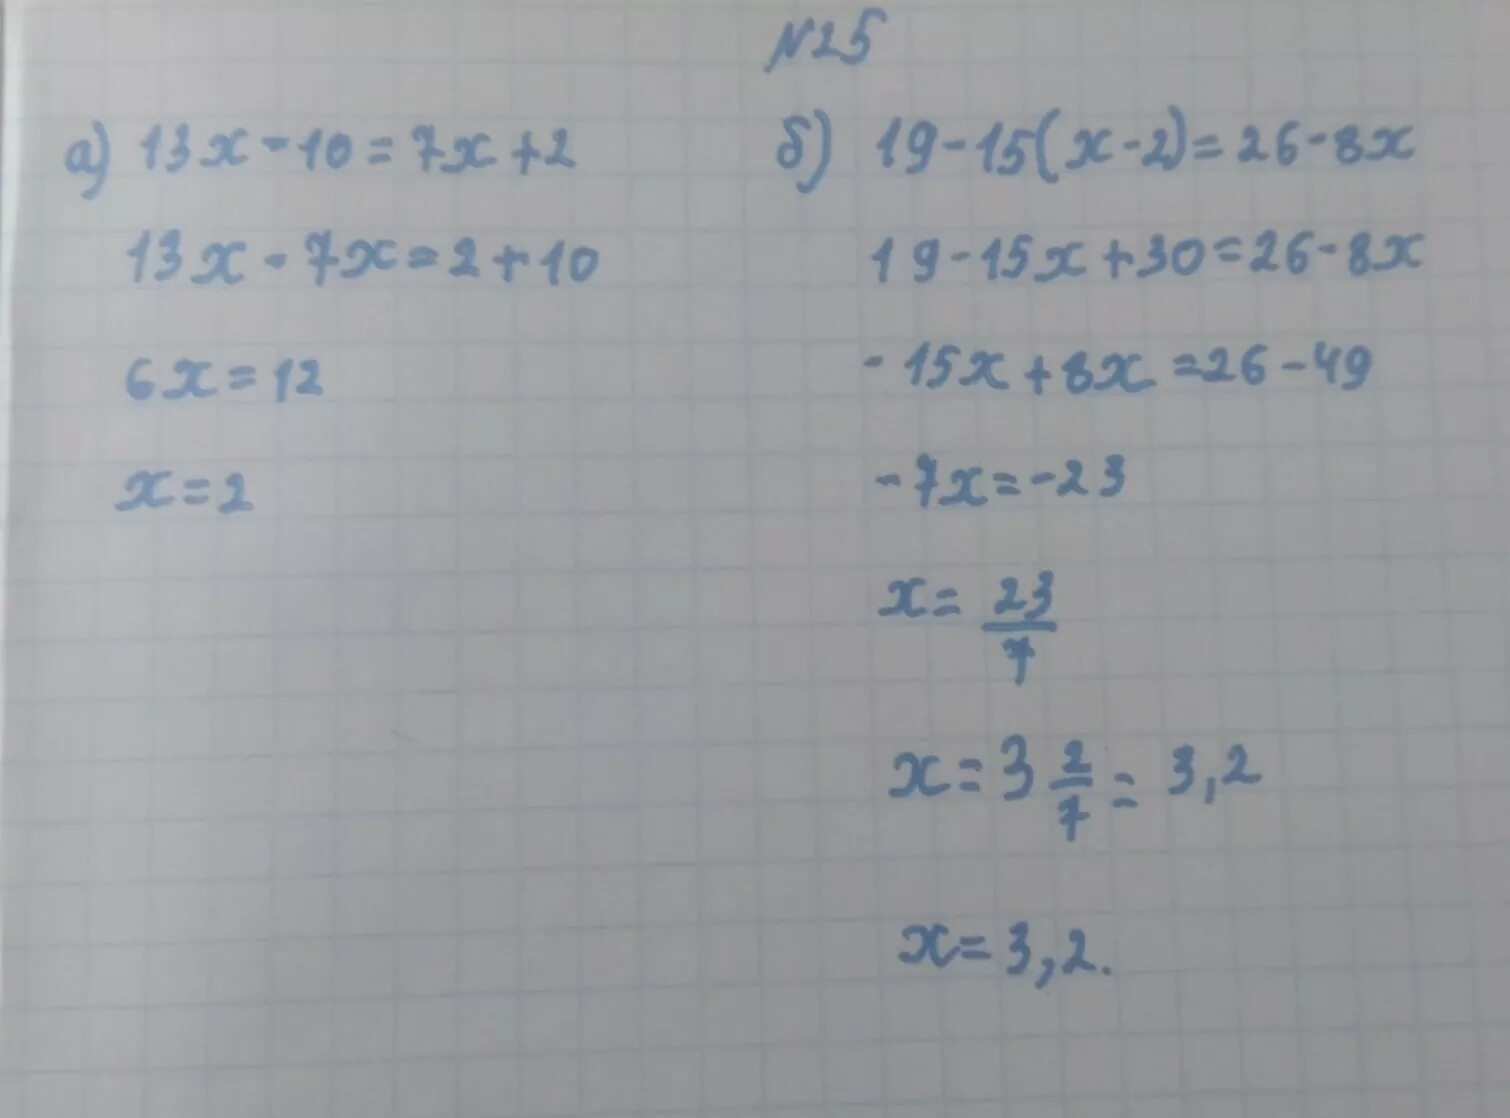 13 X 2 2 X 13 2. (13-Х)(13-X) решение. 13x-26=130 решение. 13х-26 -130 решить. 13 x 10 0 8